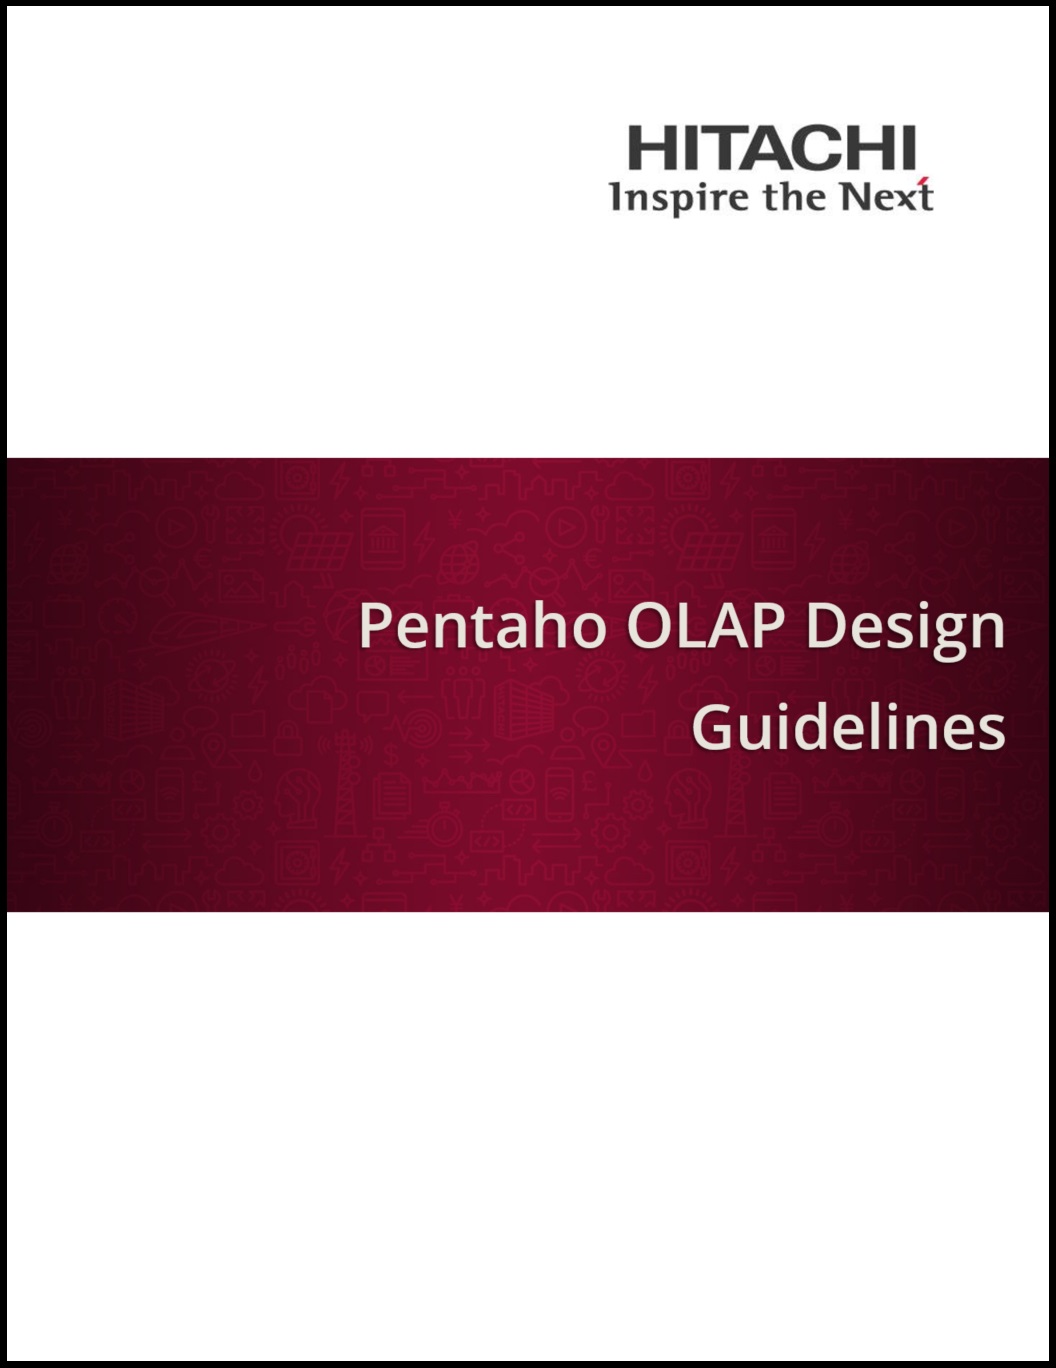 Pentaho_OLAP_Design_Guidelines.jpg